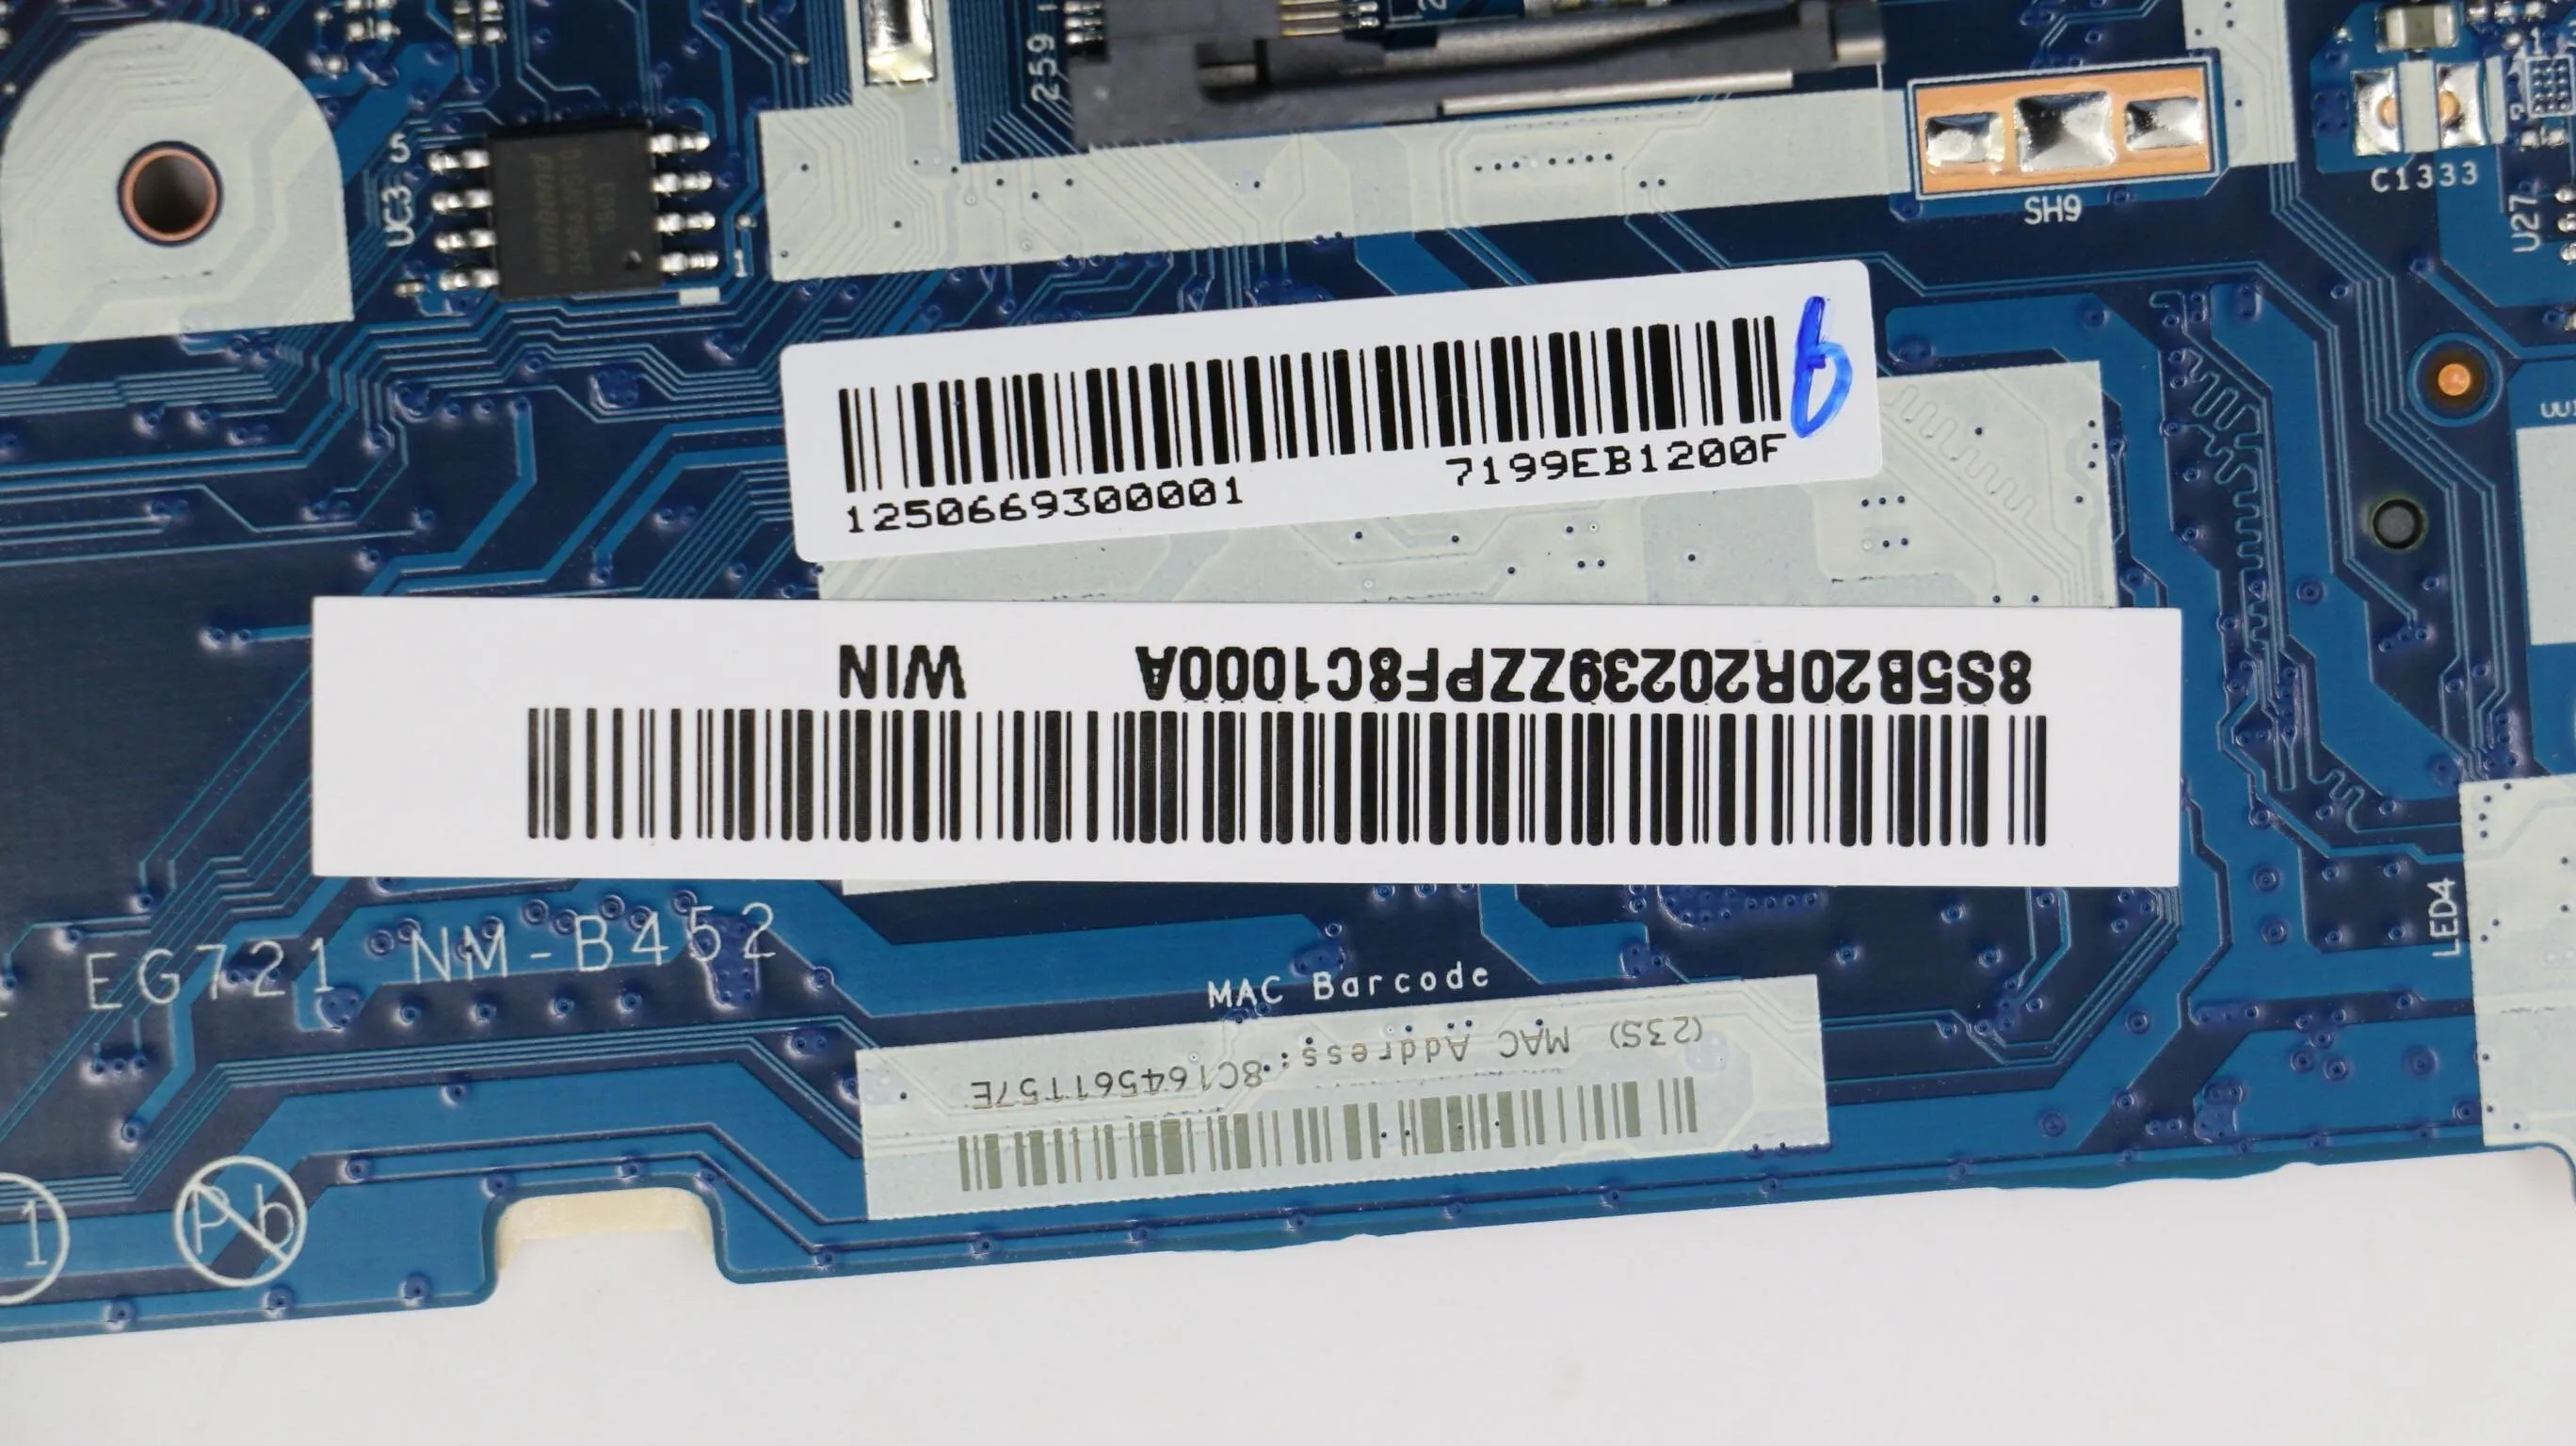 SN NM-B452 FRU PN 5B20P99222 CPU I78550U Model kompatibilný EG521 522 721 EZ511 ideapad 320-15IKB notebook základnej doske počítača